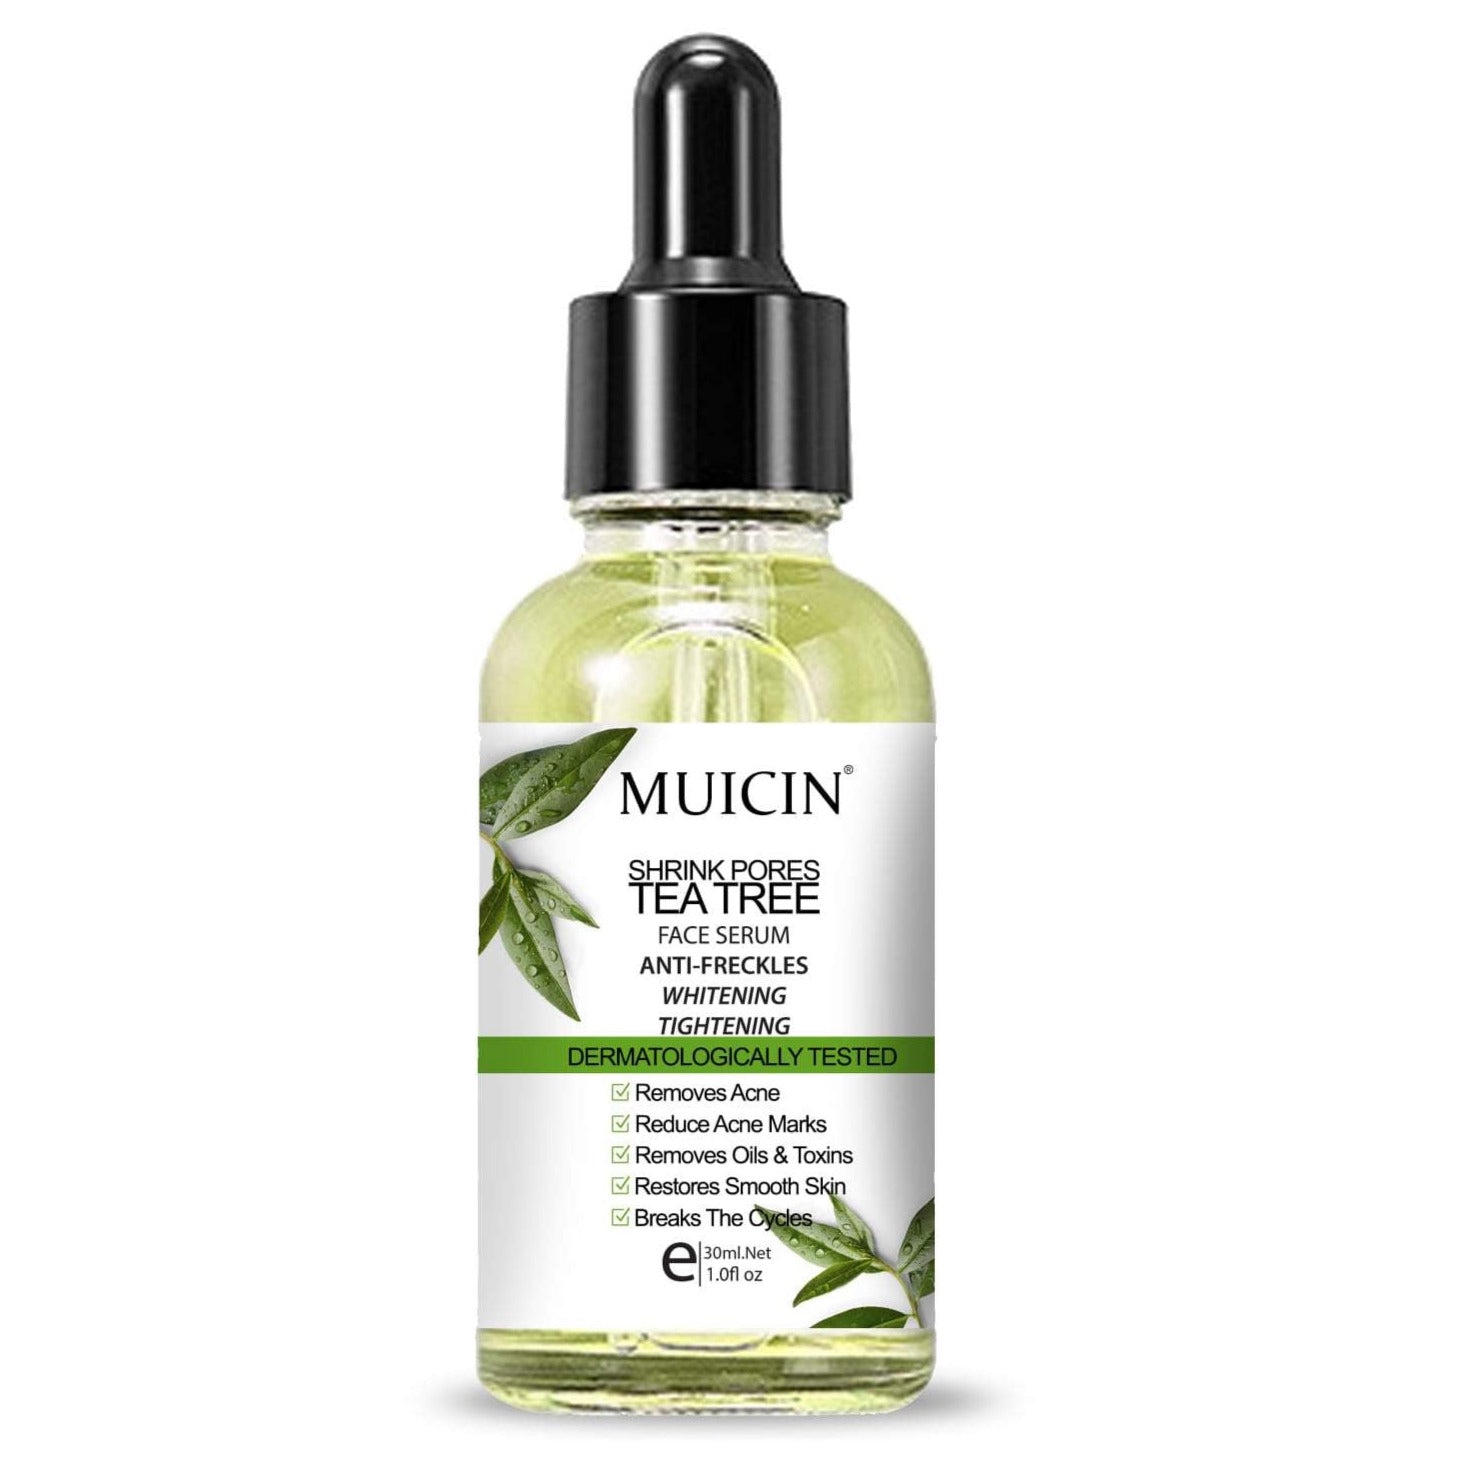 MUICIN - Shrink Pores Tea Tree Face Serum - 30ml